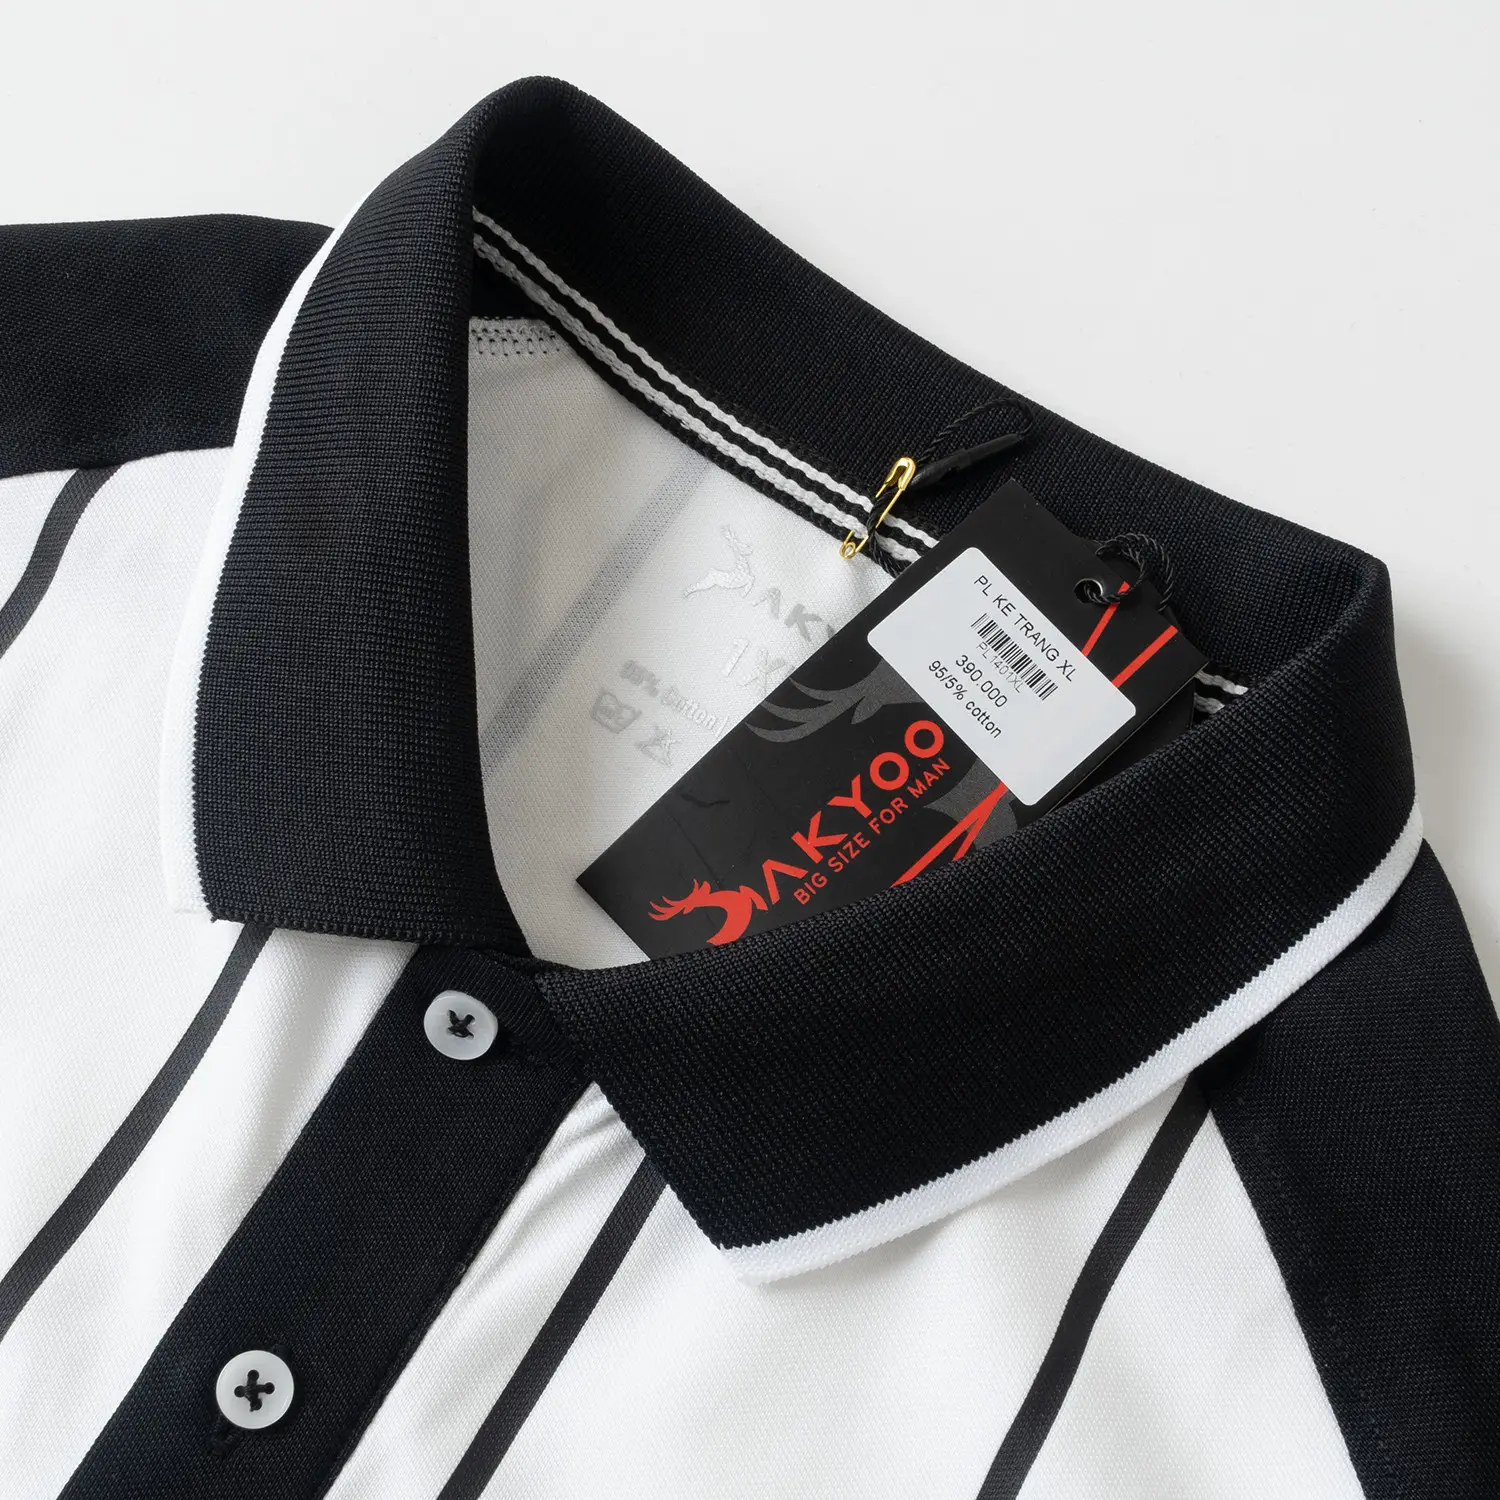 Impresión bordada algodón Polos Casual secado rápido moda ropa camisa de manga corta